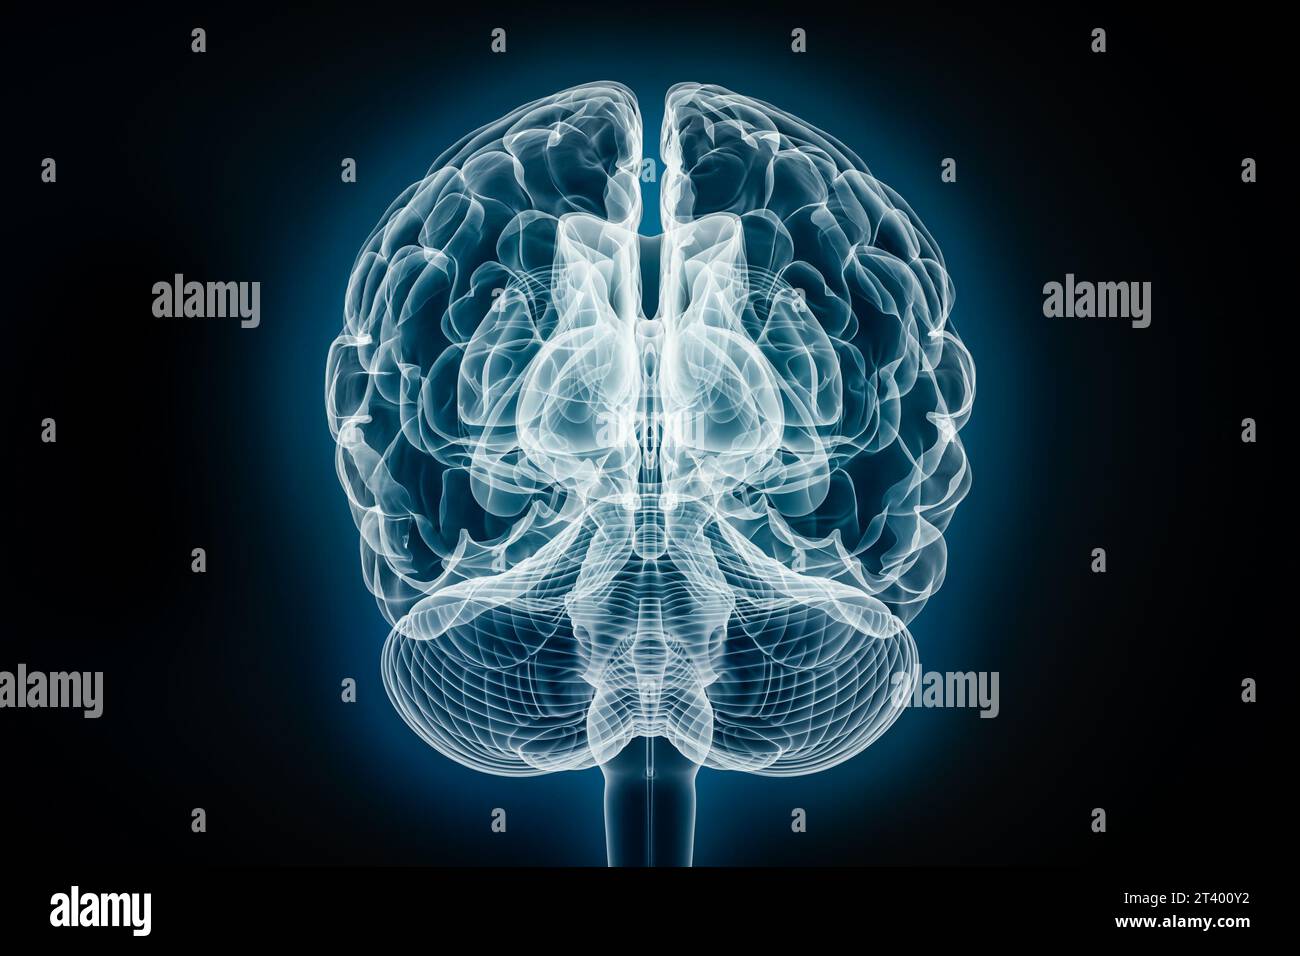 Vista frontale o posteriore a raggi X dell'illustrazione di rendering 3D cerebrale completo. Anatomia del corpo umano e del sistema nervoso, medico, sanitario, biologia, scienza Foto Stock